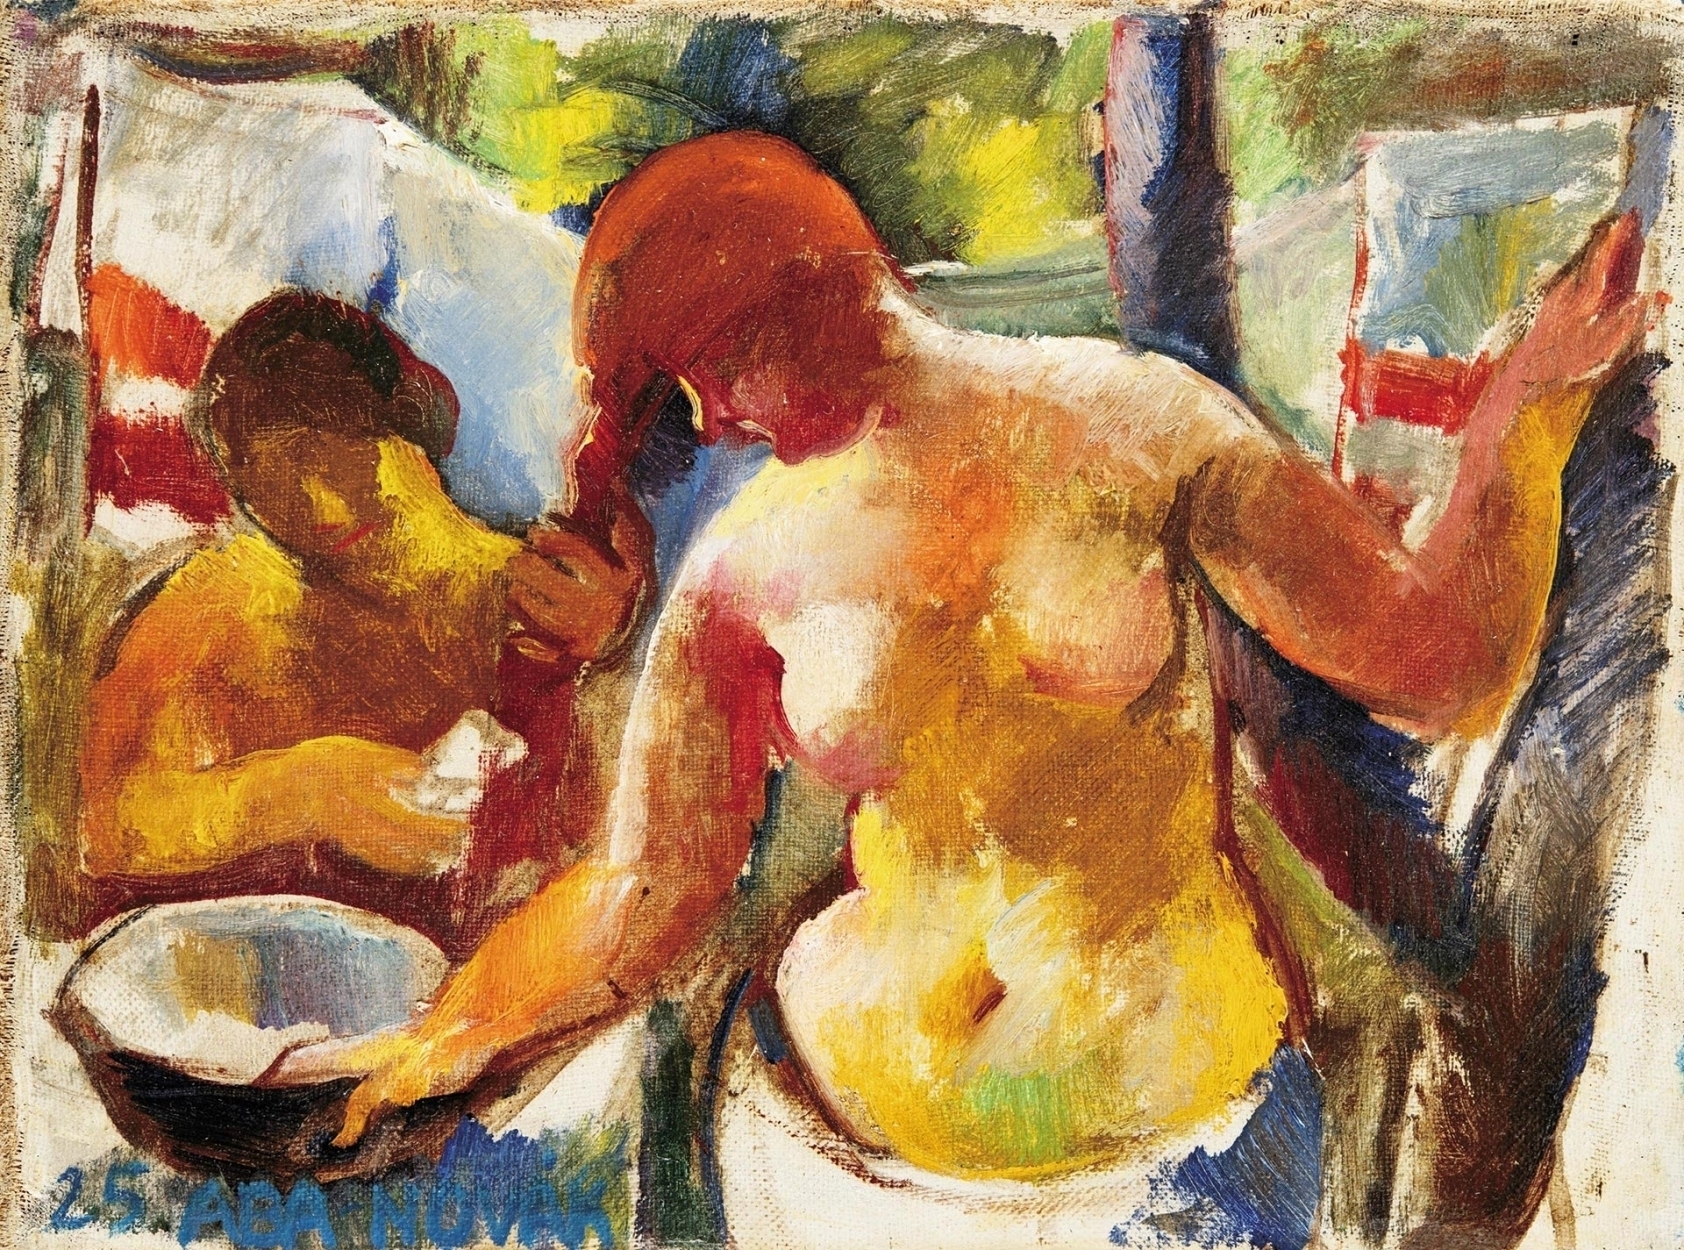 Combing her Hair by Vilmos Aba-Novák, 1925